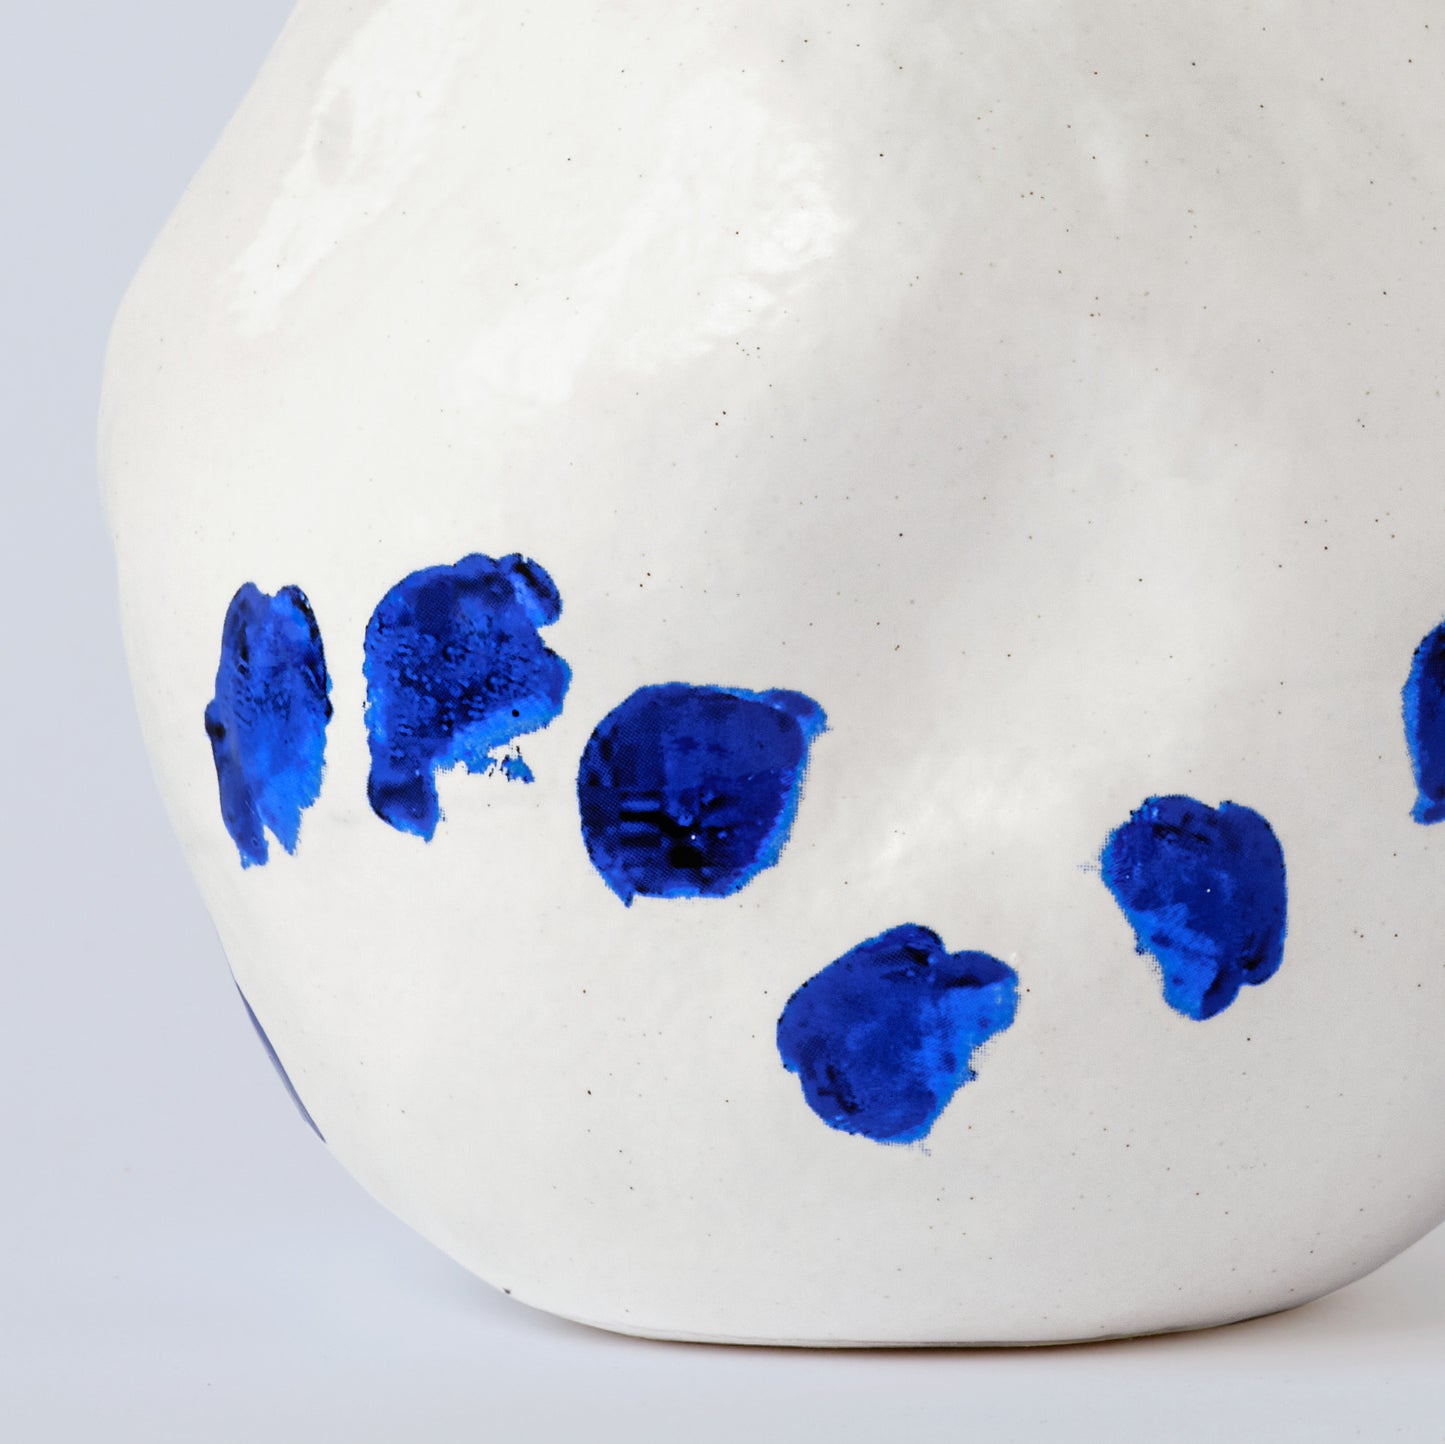 Kara White and Blue Porcelain Vase